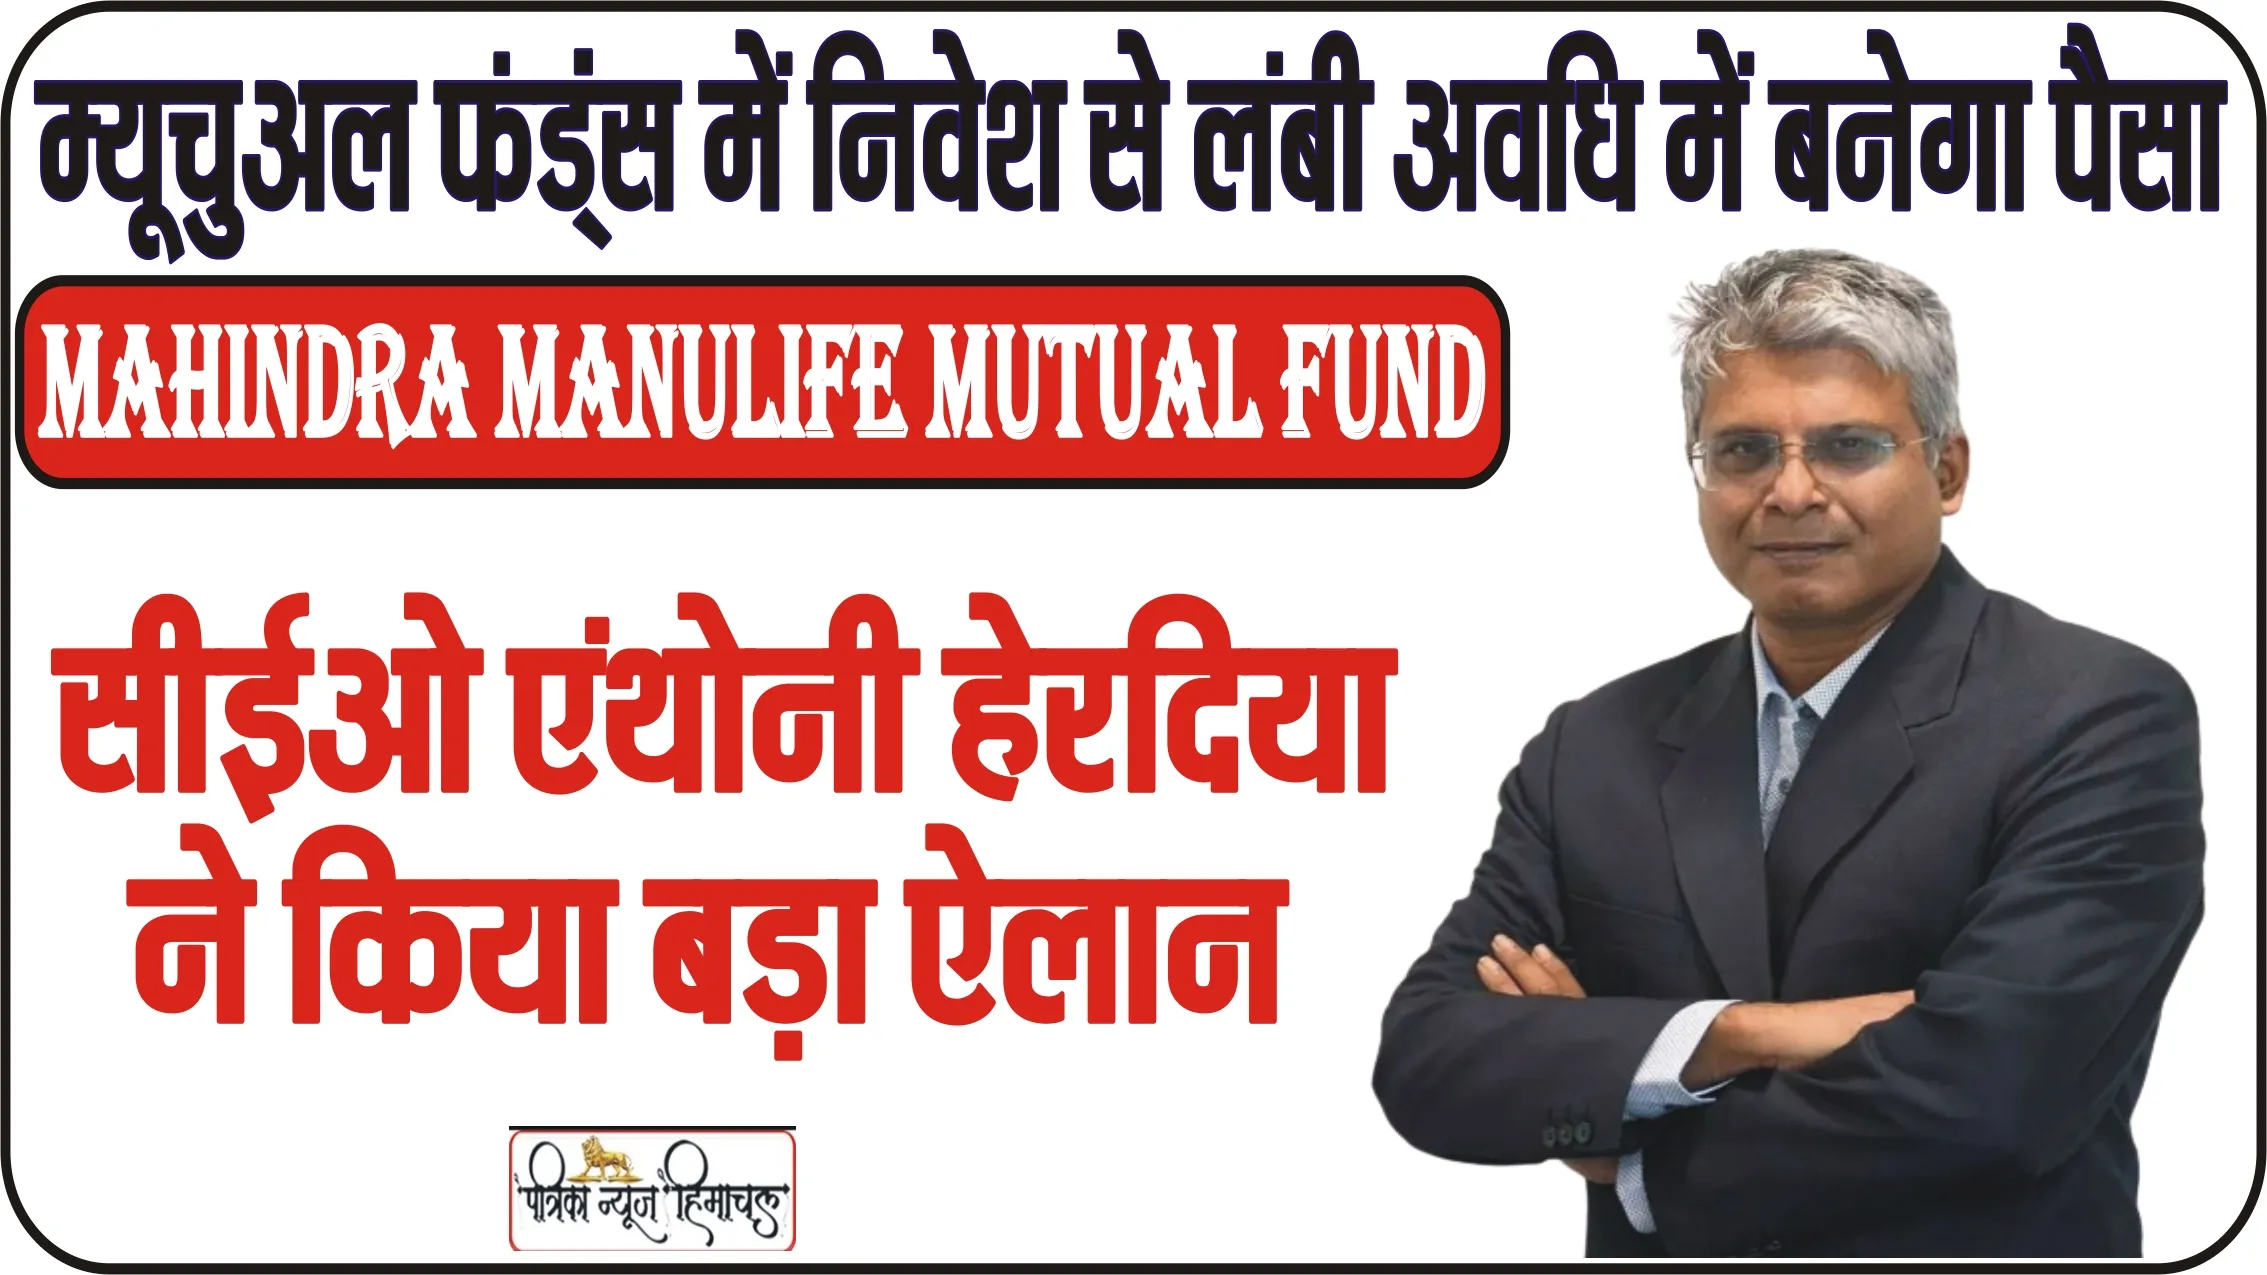 Mahindra Manulife Mutual Fund के सीईओ एंथोनी हेरदिया ने किया बड़ा ऐलान, लाखों रुपये का निवेश करने से यहां है ज्यादा फायदा